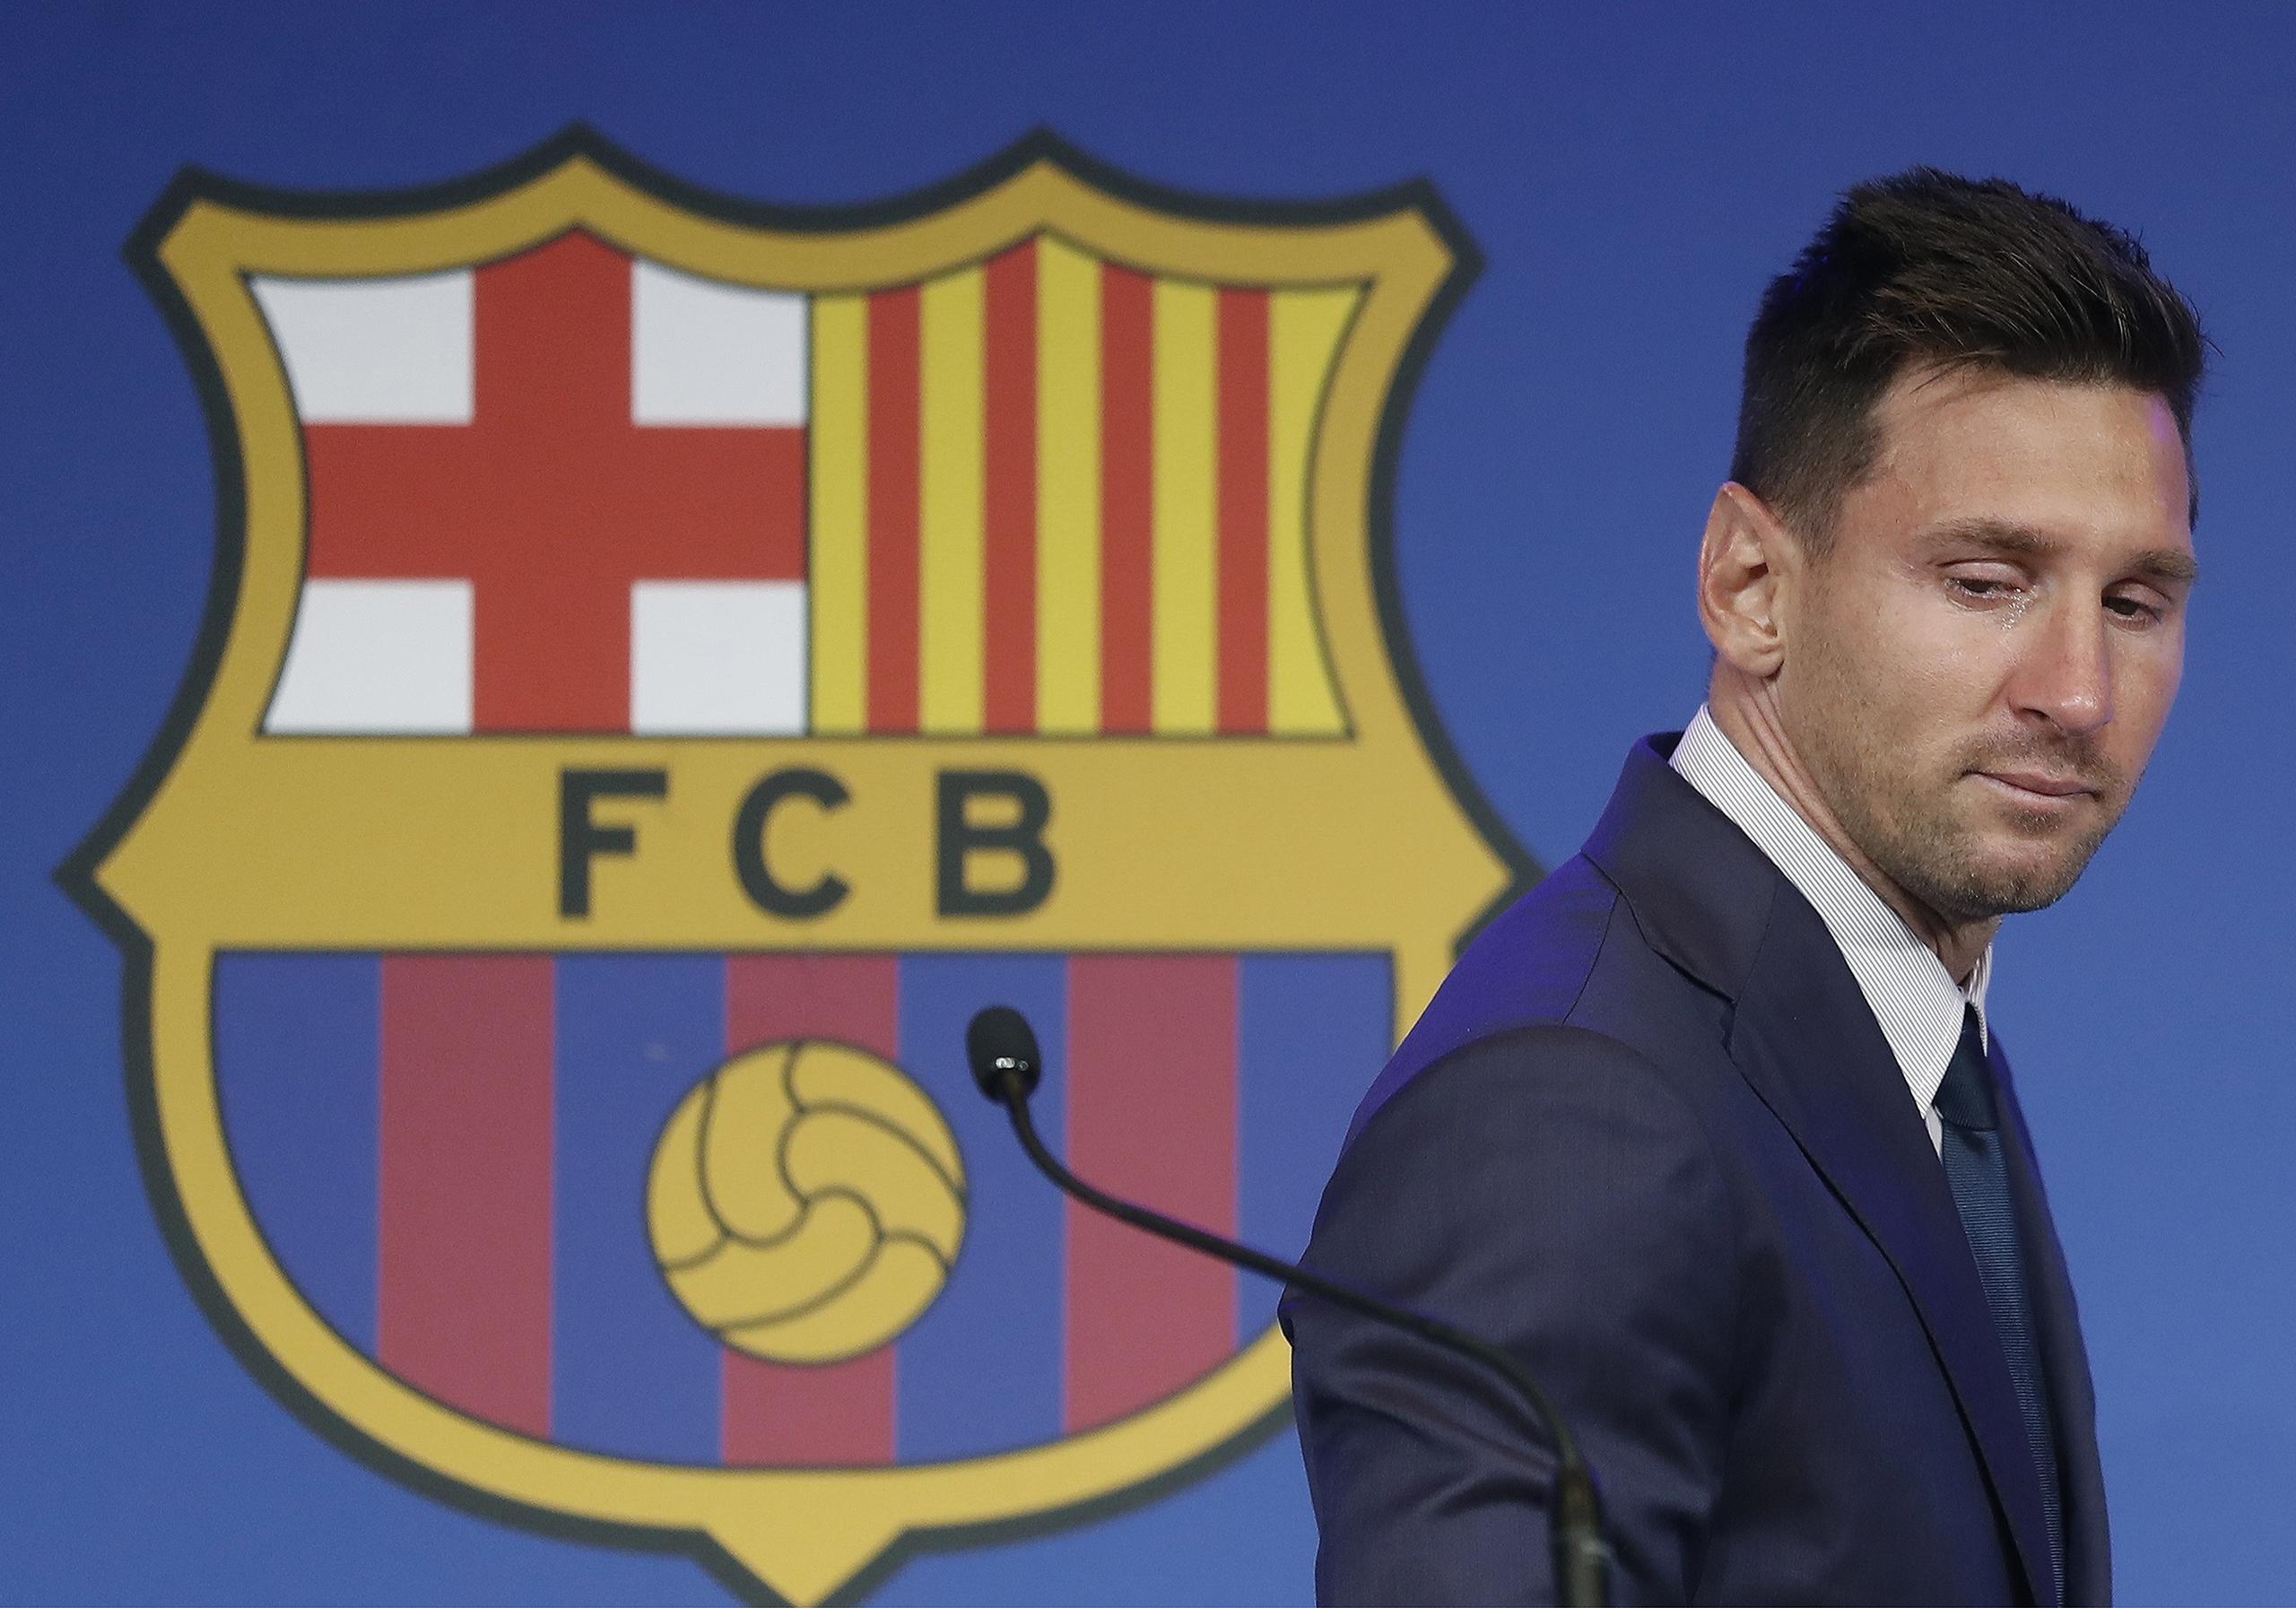 En el último contrato de Messi con el Barça, que se firmó en 2017, se incluyó la cláusula 3.1, por la cual el futbolista podía irse libre, sin alegar causa justa, al final de la temporada 2019-20 siempre que lo comunicara al club antes del 10 de junio de 2020.